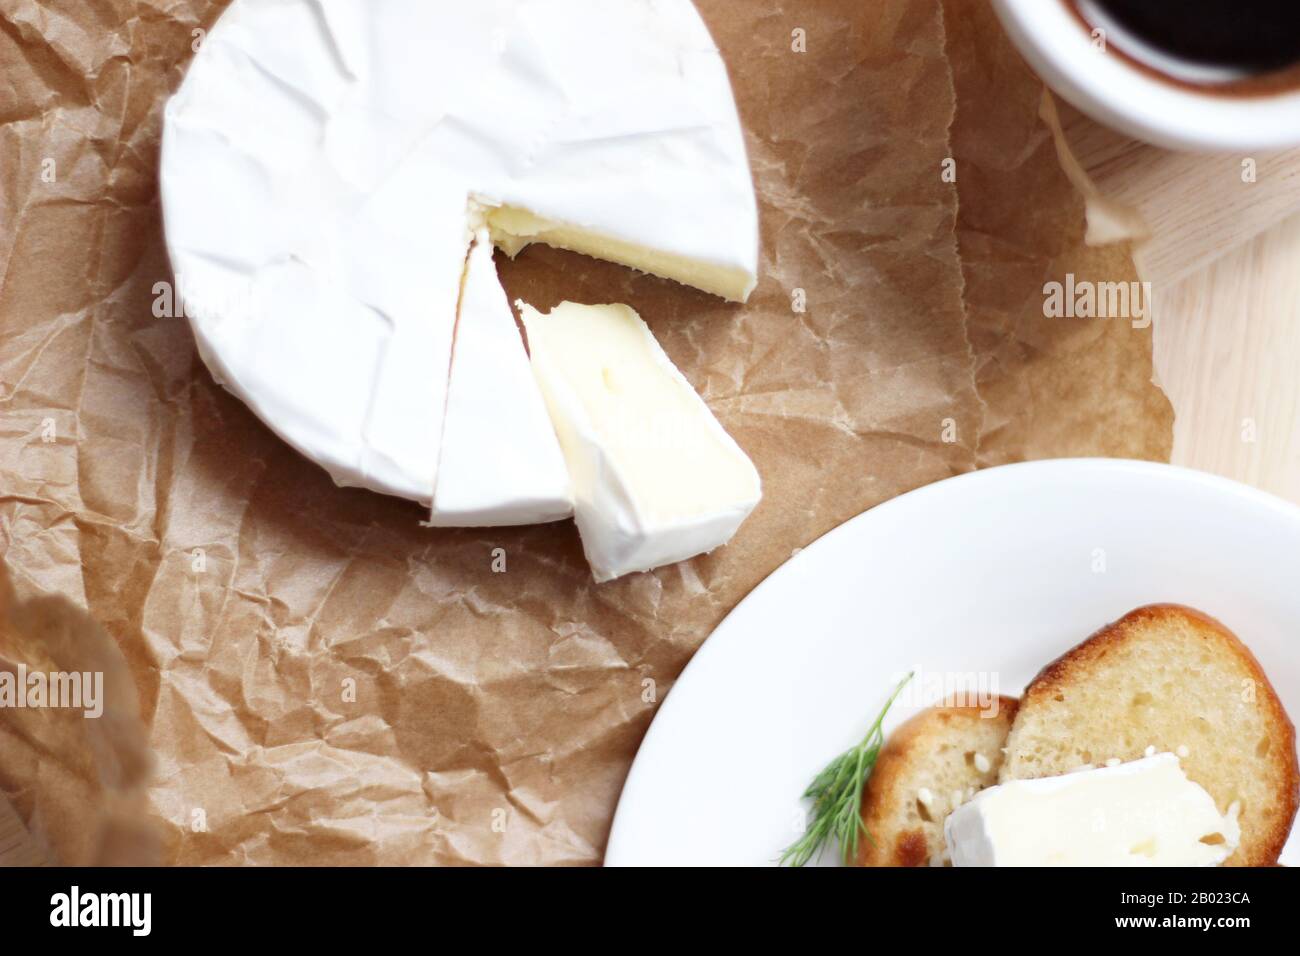 Formaggio francese. Formaggio Brie in carta da imballaggio sul tavolo con Toast e tazza di caffè. Stile degli alimenti. Prodotti francesi tradizionali. Foto Stock